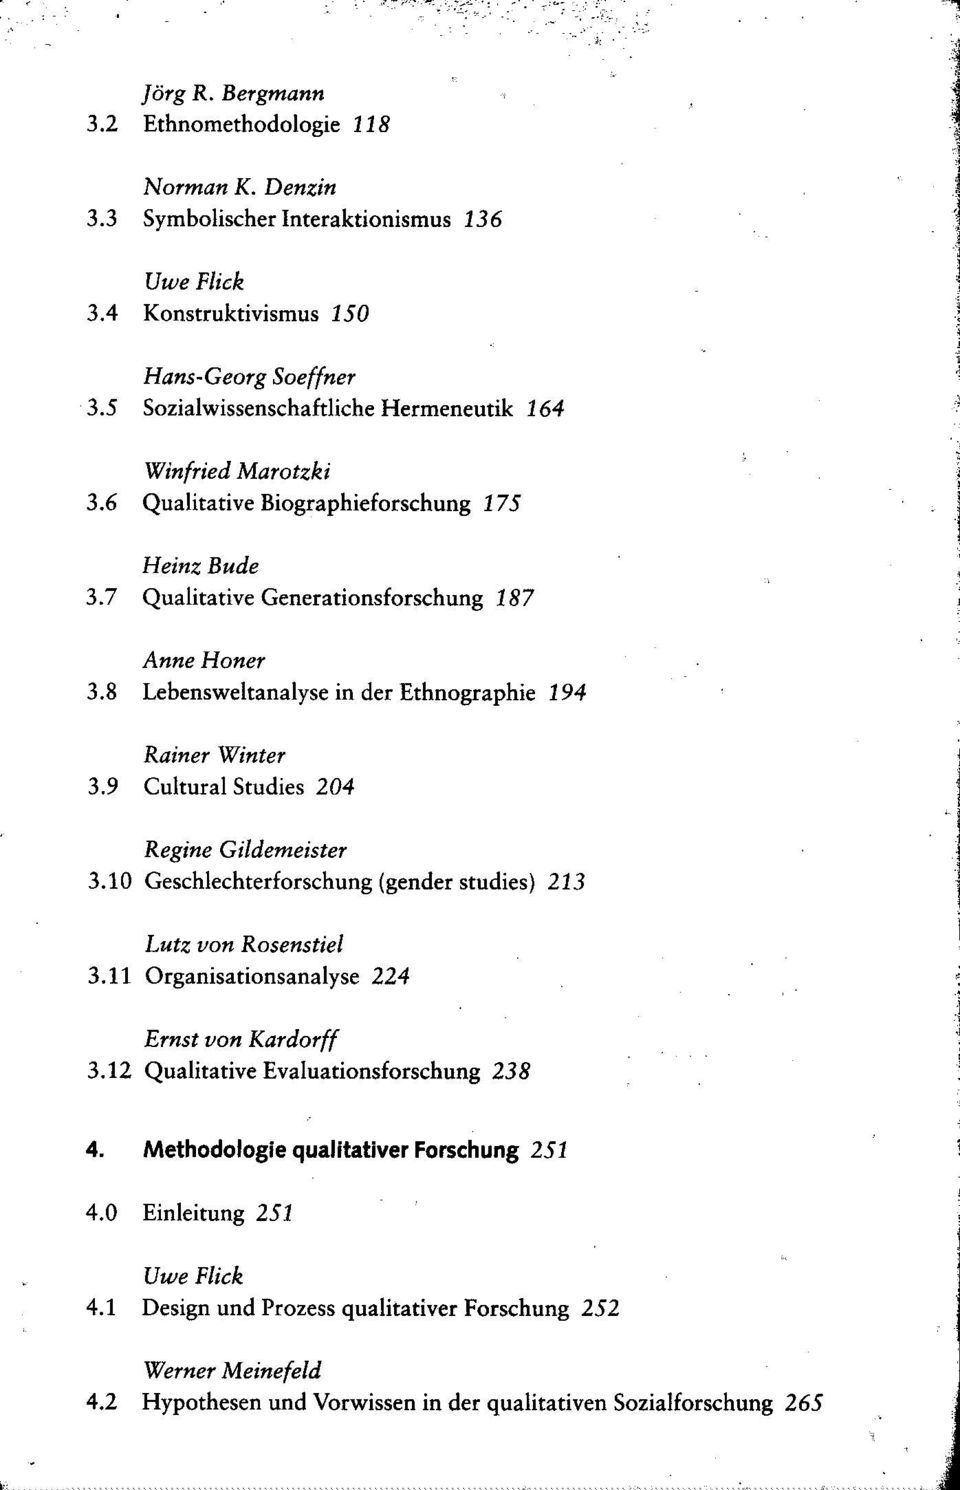 8 Lebensweltanalyse in der Ethnographie 194 Rainer Winter 3.9 Cultural Studies 204 Regine Gildemeister 3.10 Geschlechterforschung (gender studies) 213 Lutz von Rosenstiel 3.